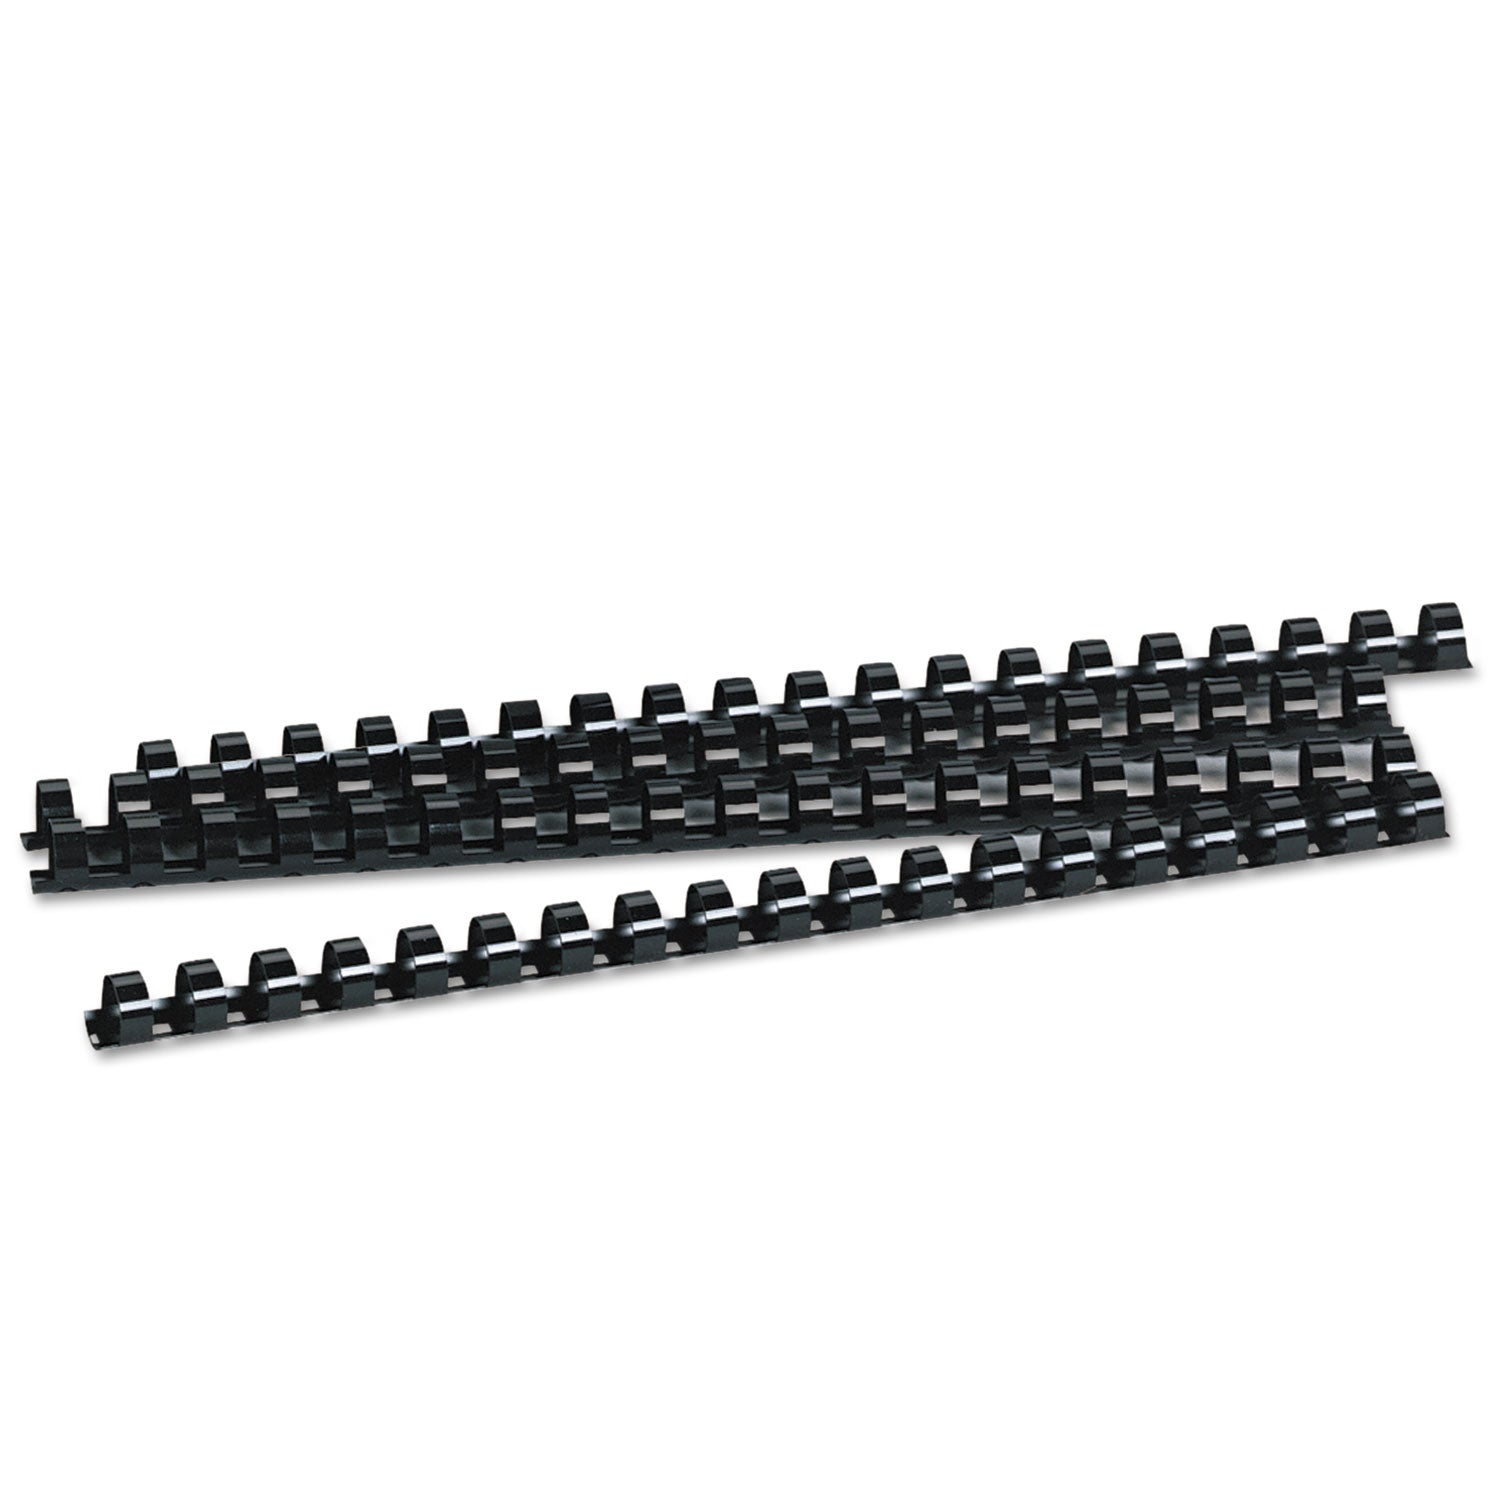 Plastic Comb Bindings, 1/2" Diameter, 90 Sheet Capacity, Black, 100/Pack - 